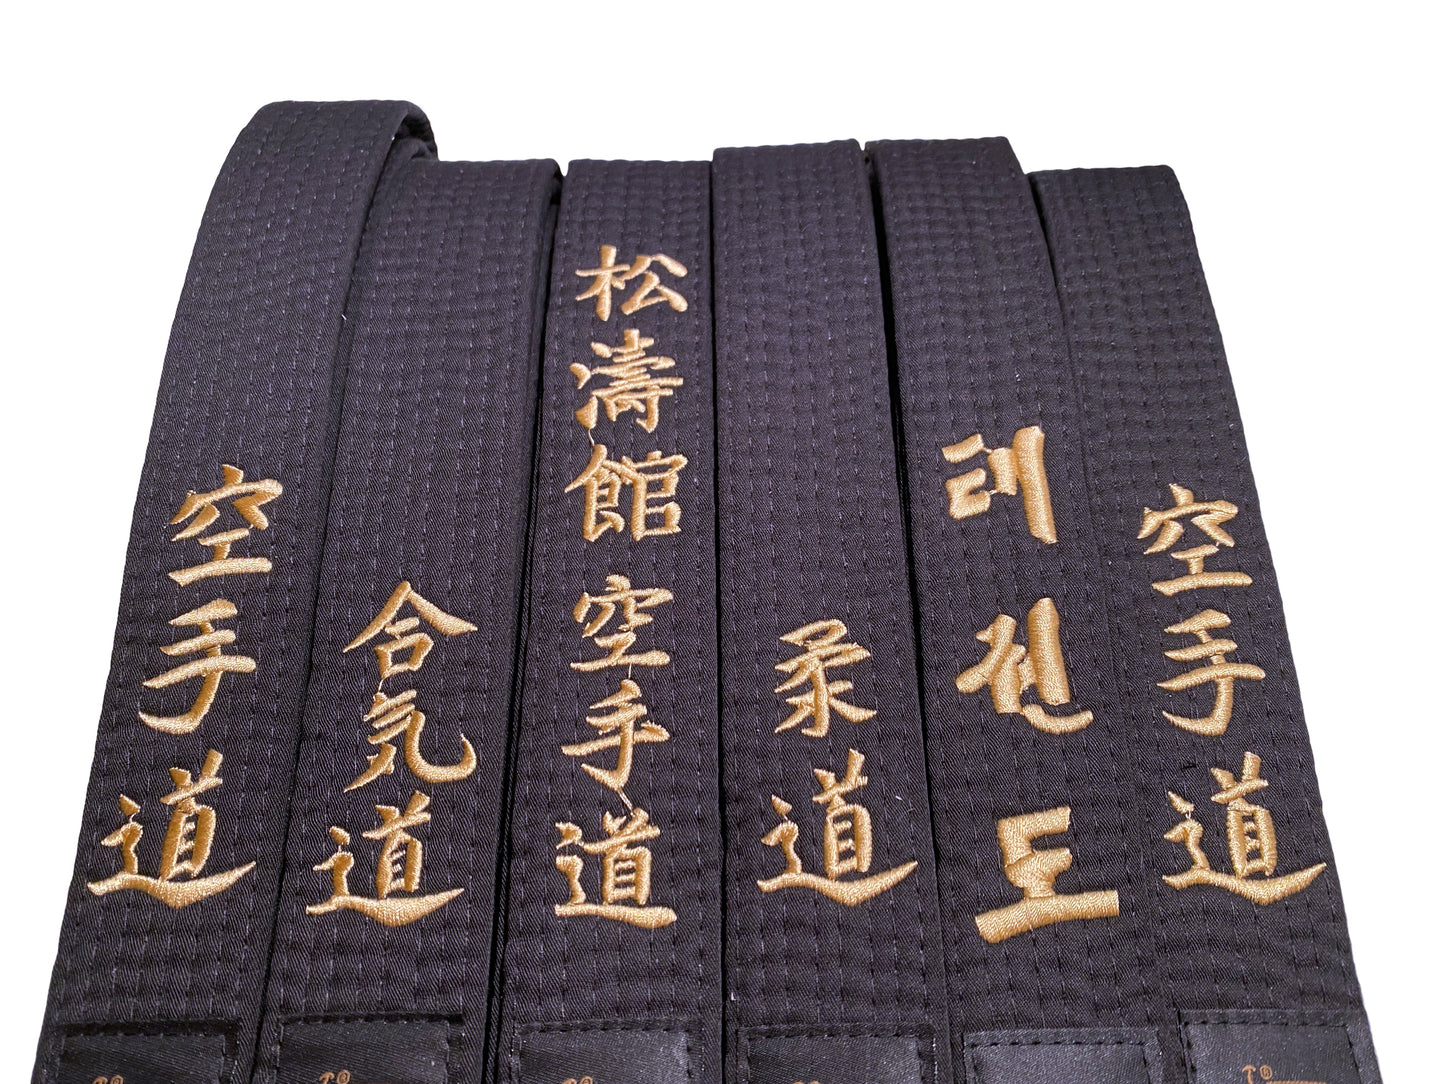 TEKKA BUDO Schwarzgurt mit Bestickung - 4 cm breit - Individuell nach Wunsch - Name, Stilrichtung, Übersetzung